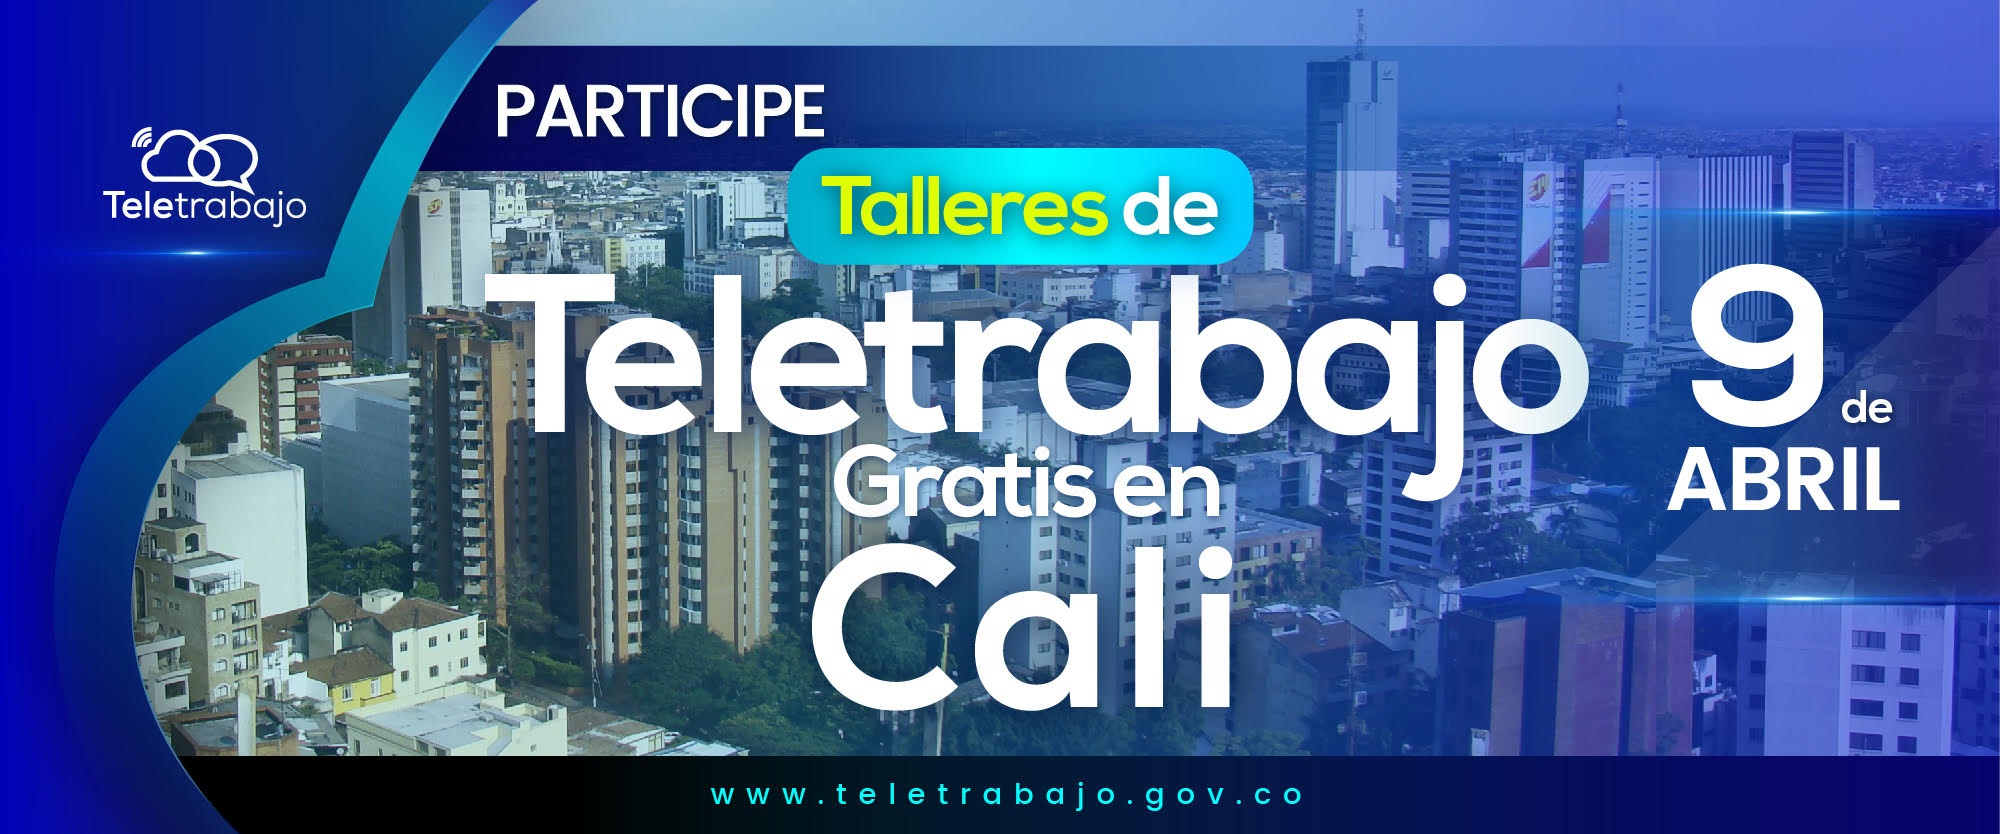 El Valle del Cauca recibirá talleres de Teletrabajo